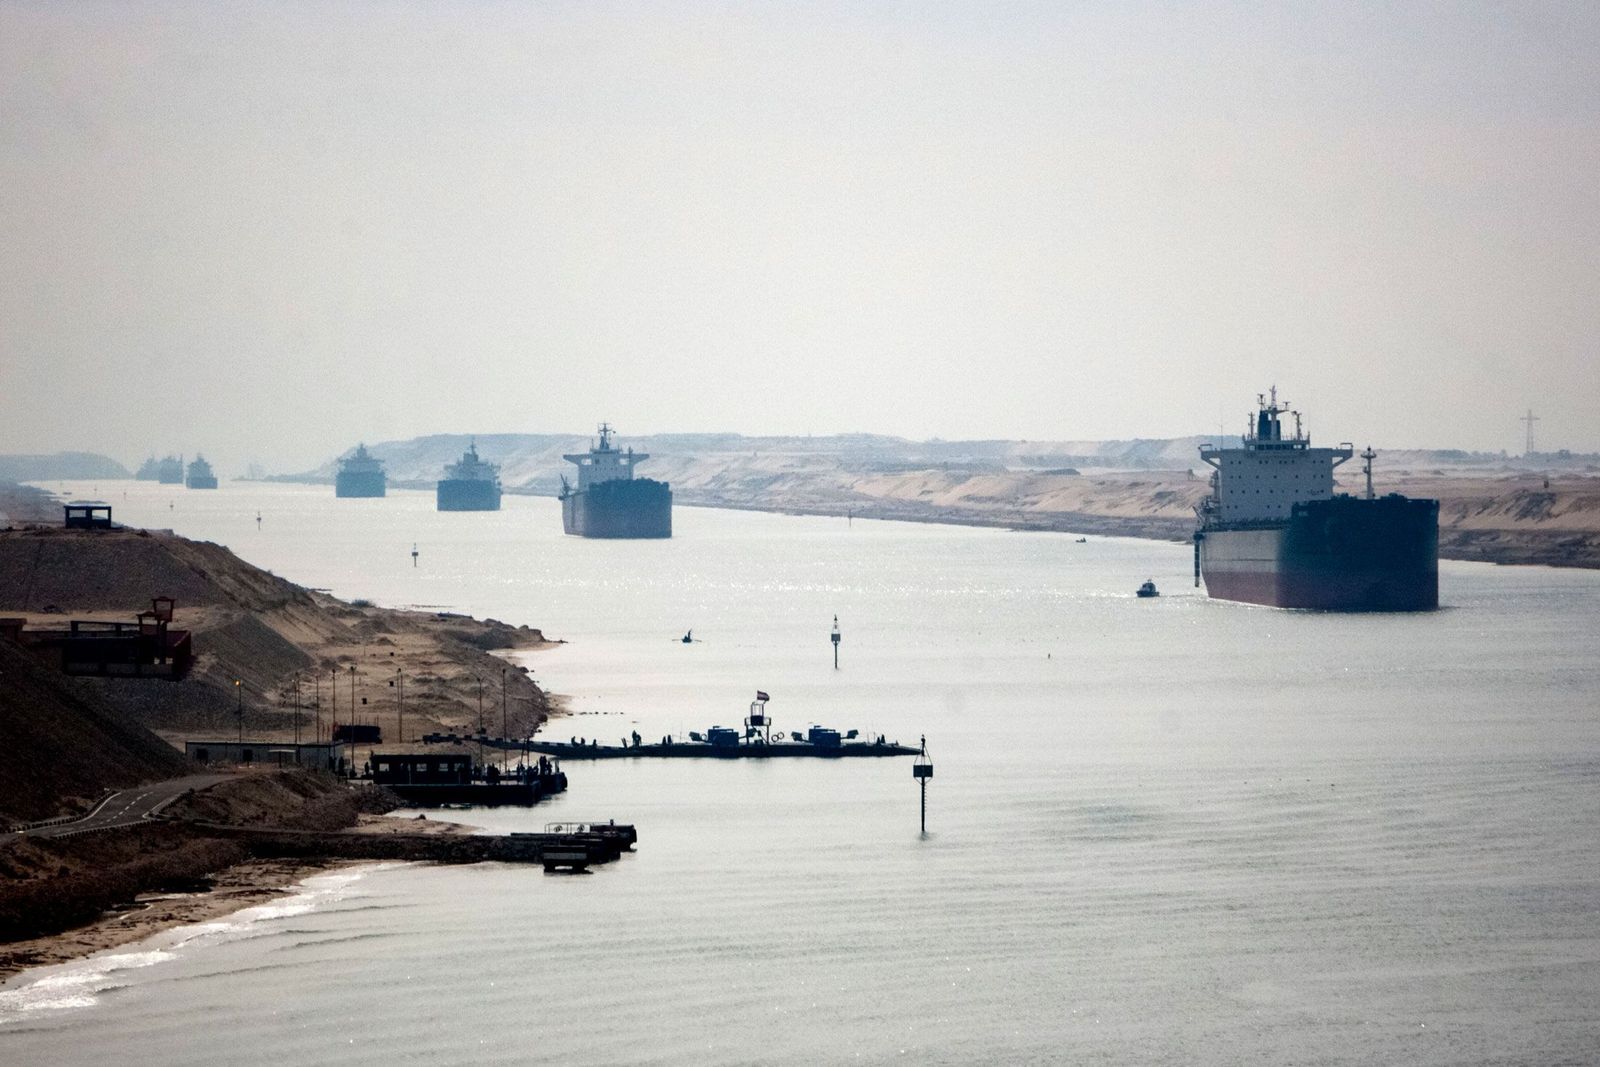 هجمات البحر الأحمر ترفع أسعار النفط إلى أعلى مستوى في أسبوعين